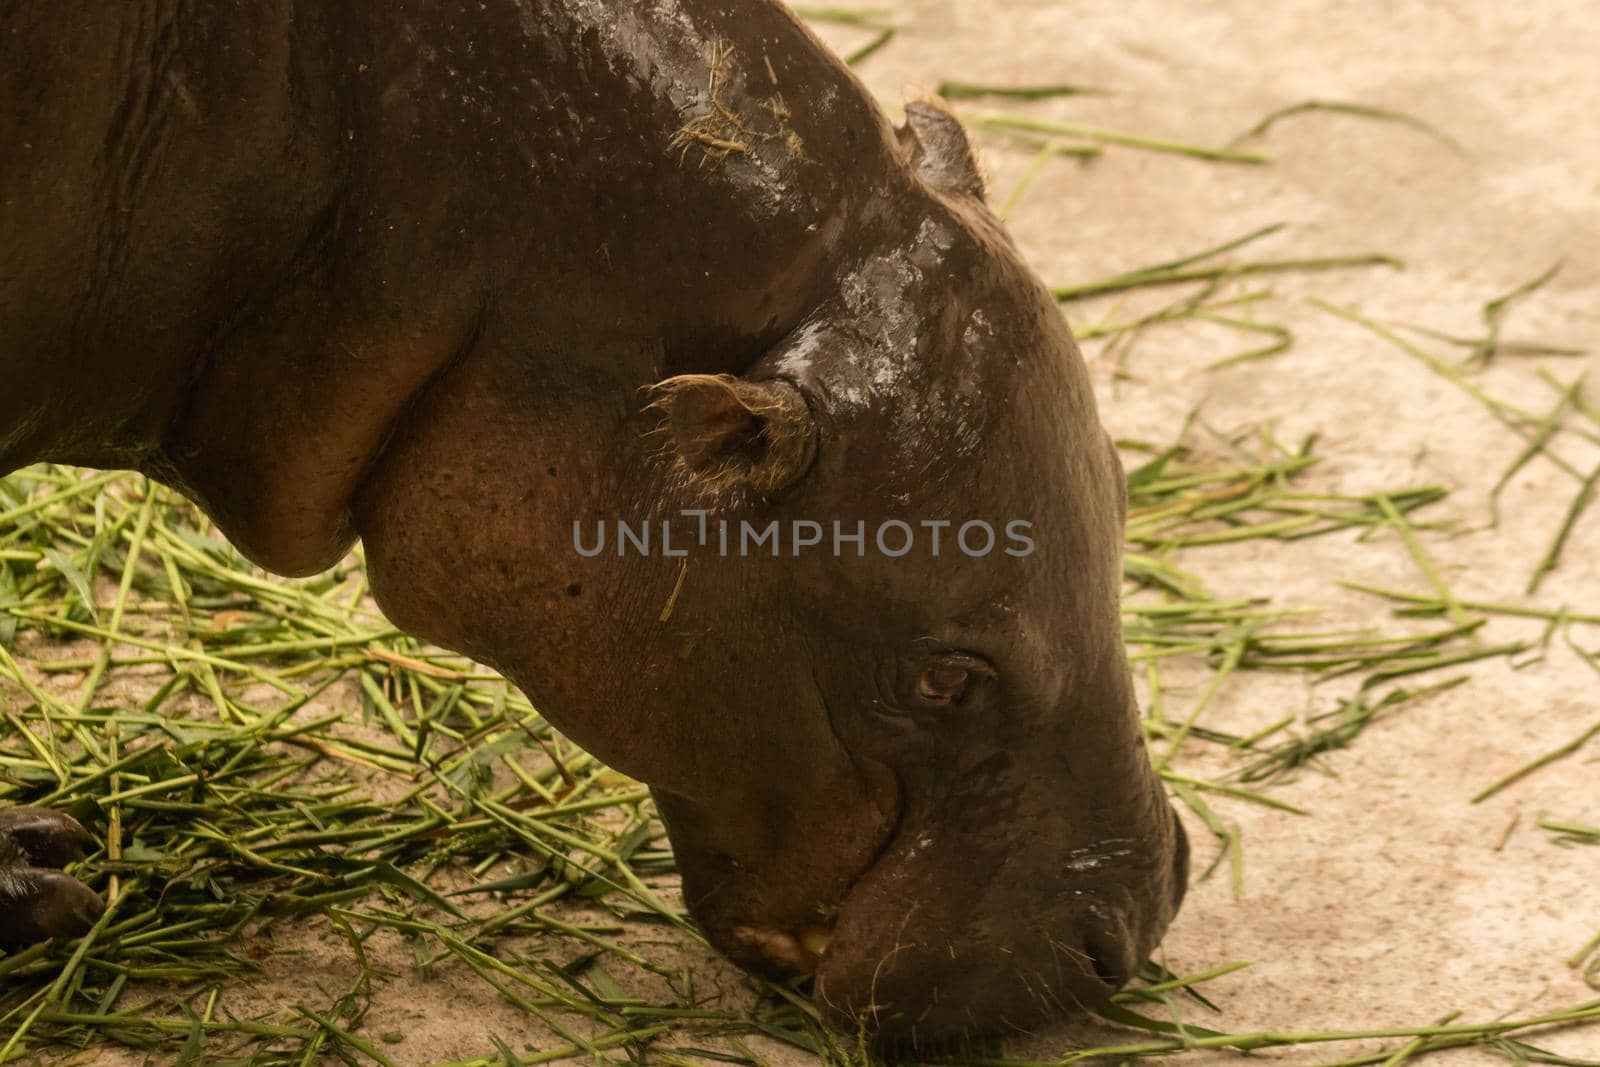 Hippopotamus eating grass
Hippopotamus is a mammal.